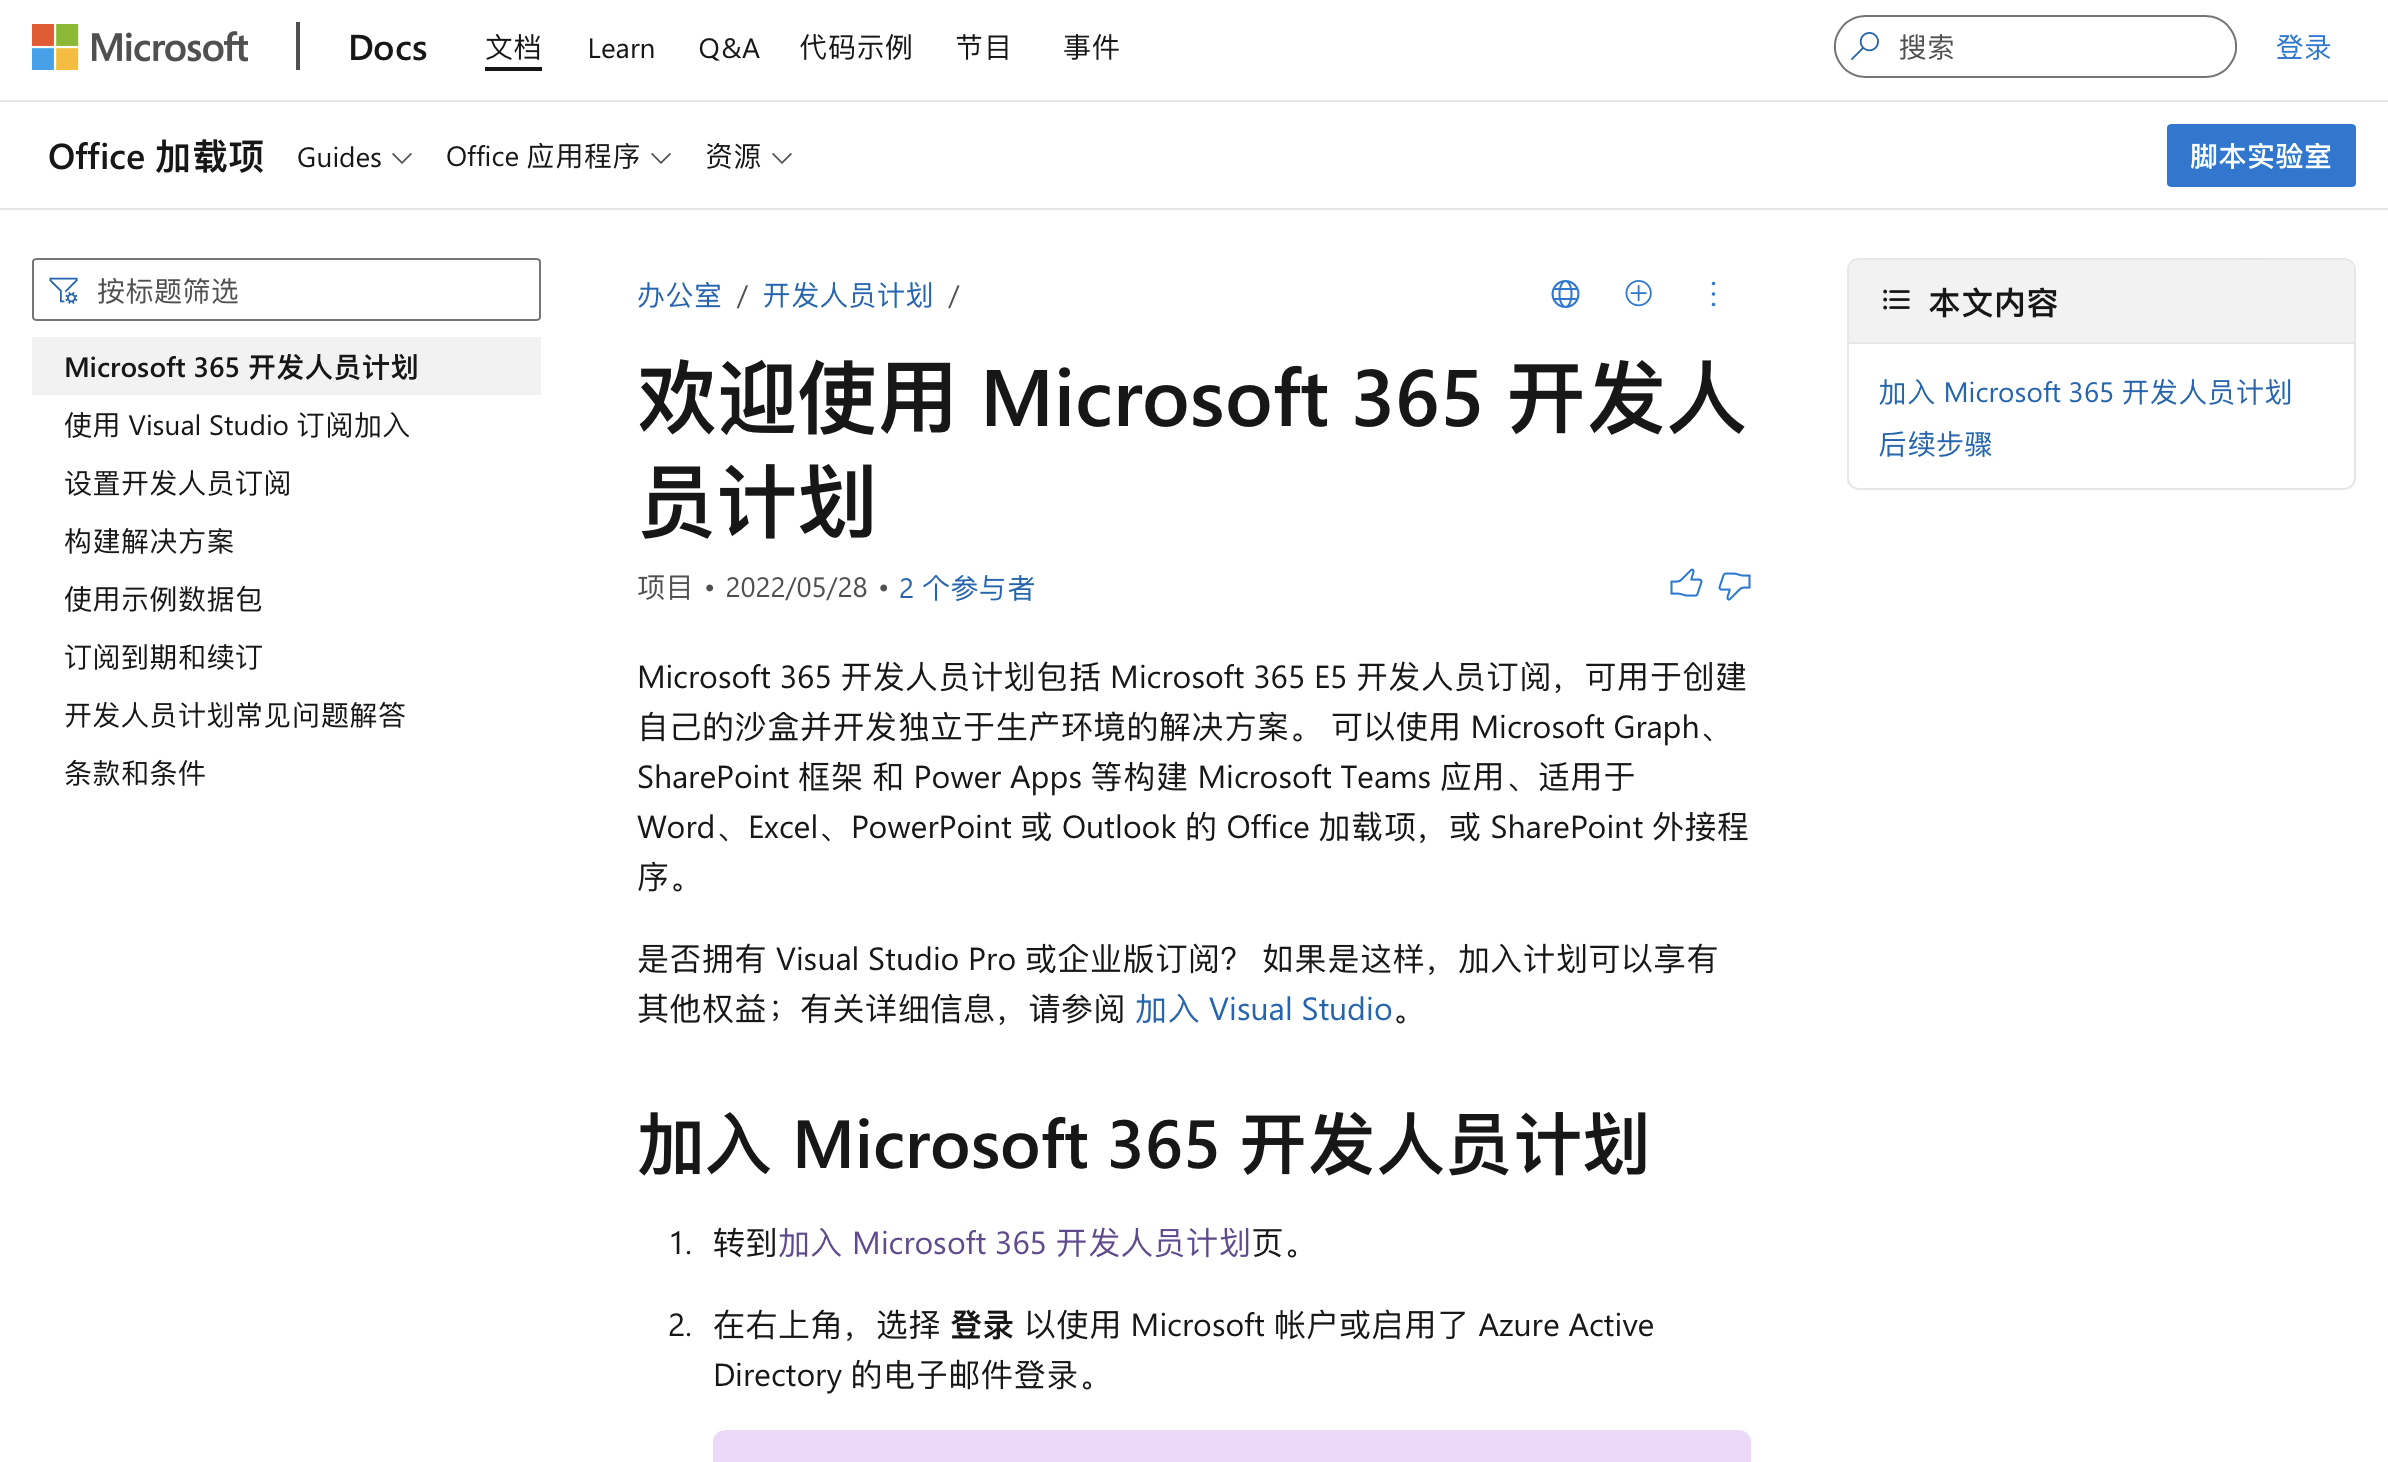 免费的 Microsoft E5 订阅申请及设置自动续订(已过时)